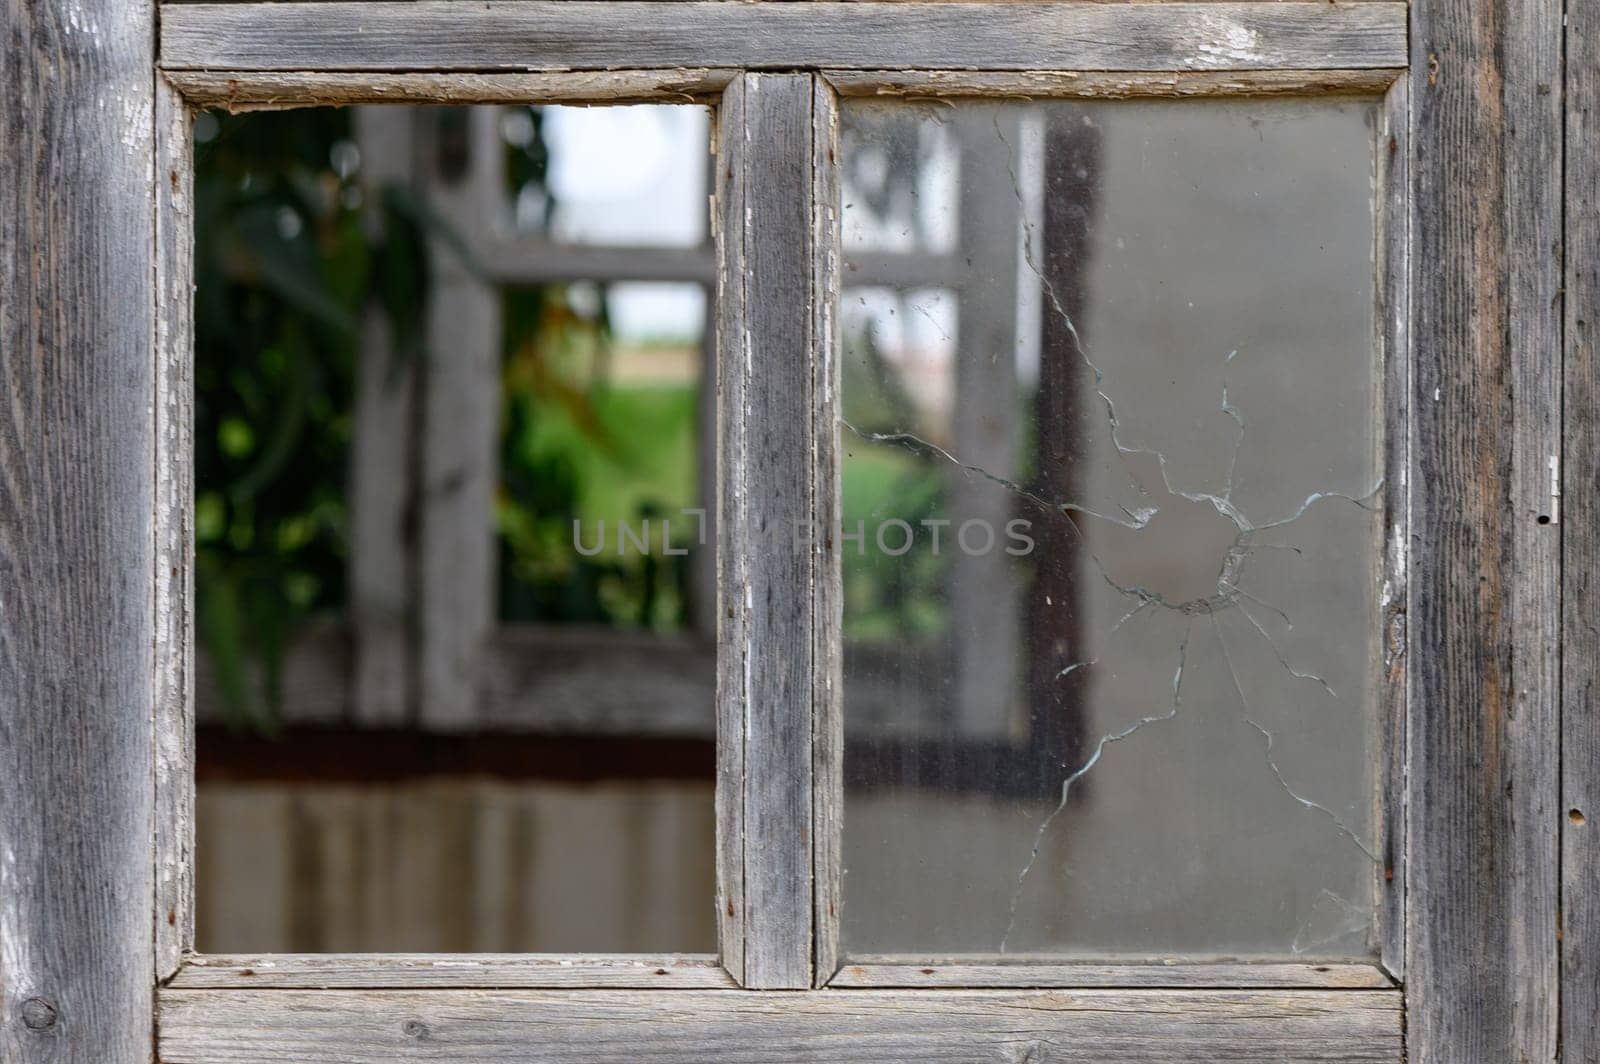 Broken window in close up by Mixa74